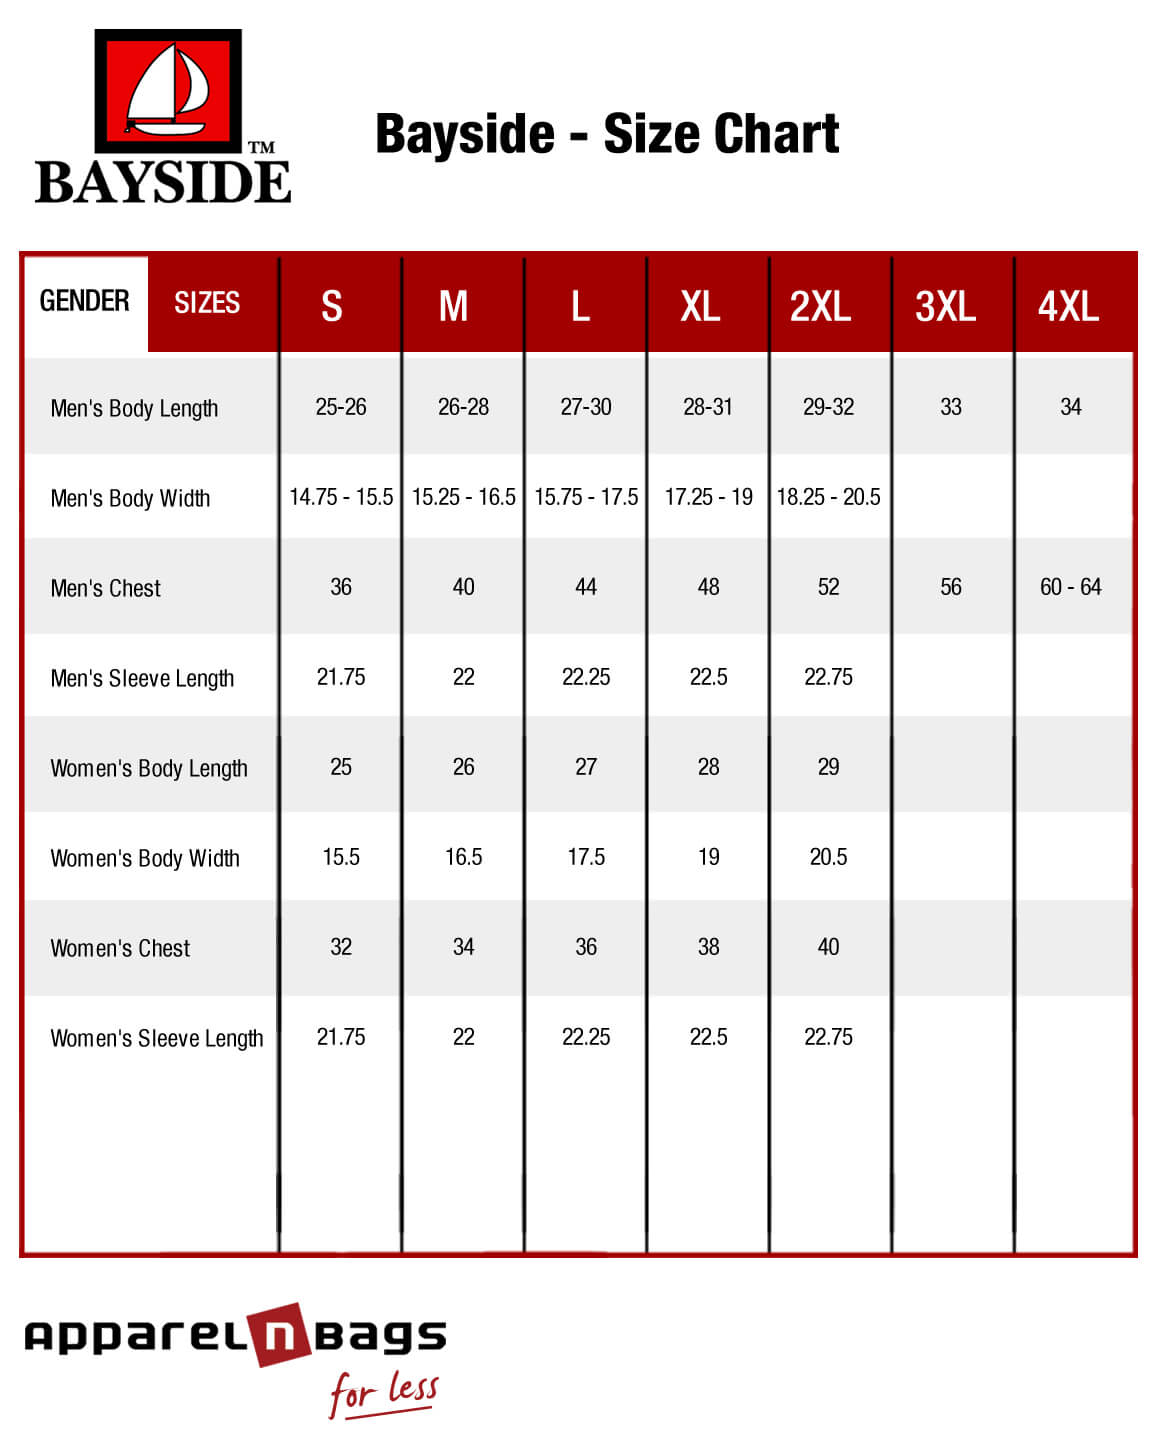 Bayside - Size Chart